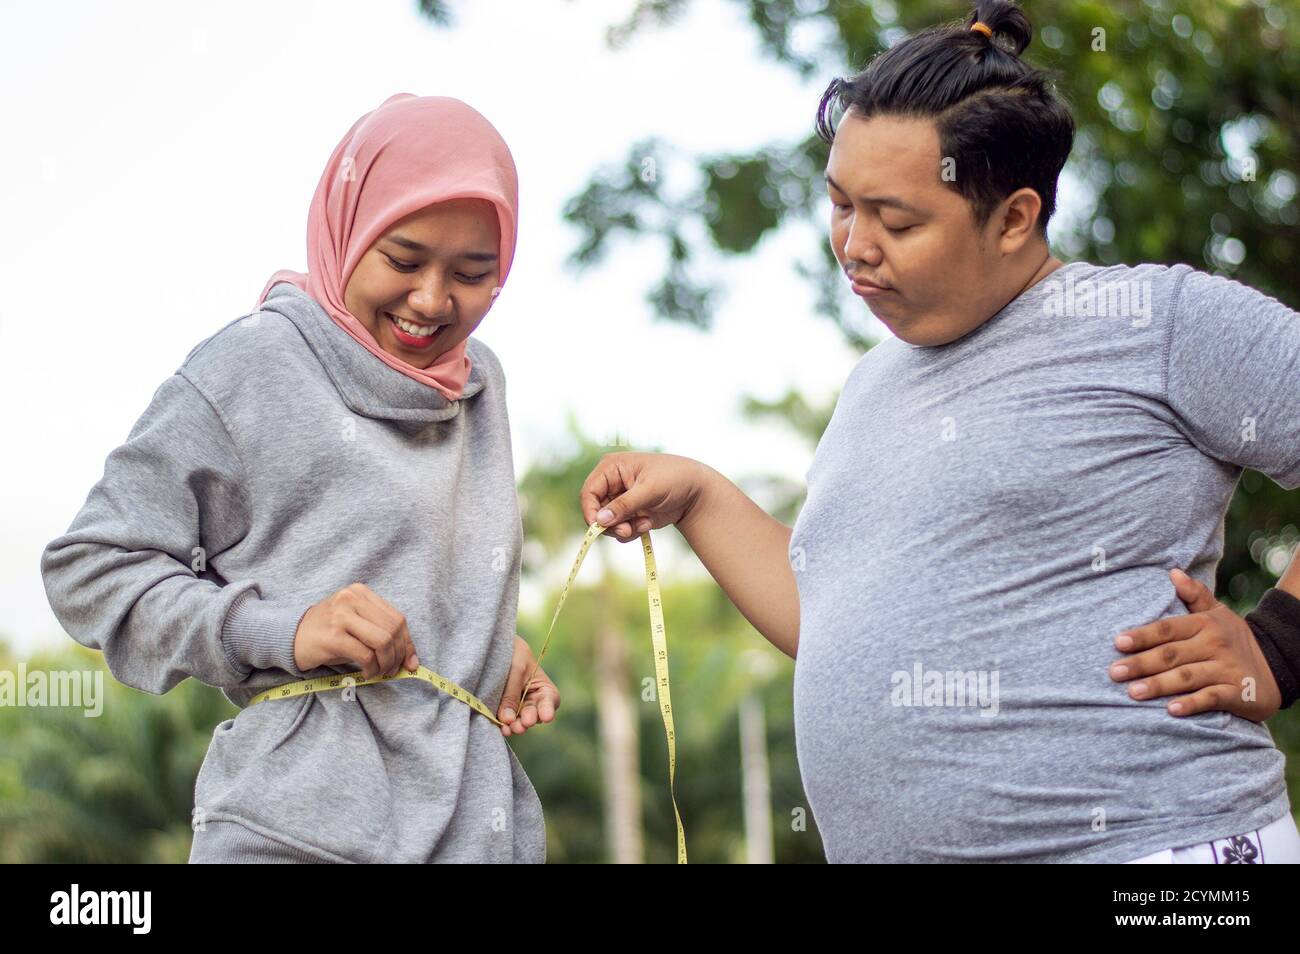 Deux personnes, une femme musulmane et un gros homme, proportionnel et de poids excessif, asiatique homme de poids excessif regarder l'envie de sa femme musulmane corps mince à l'extérieur ci Banque D'Images